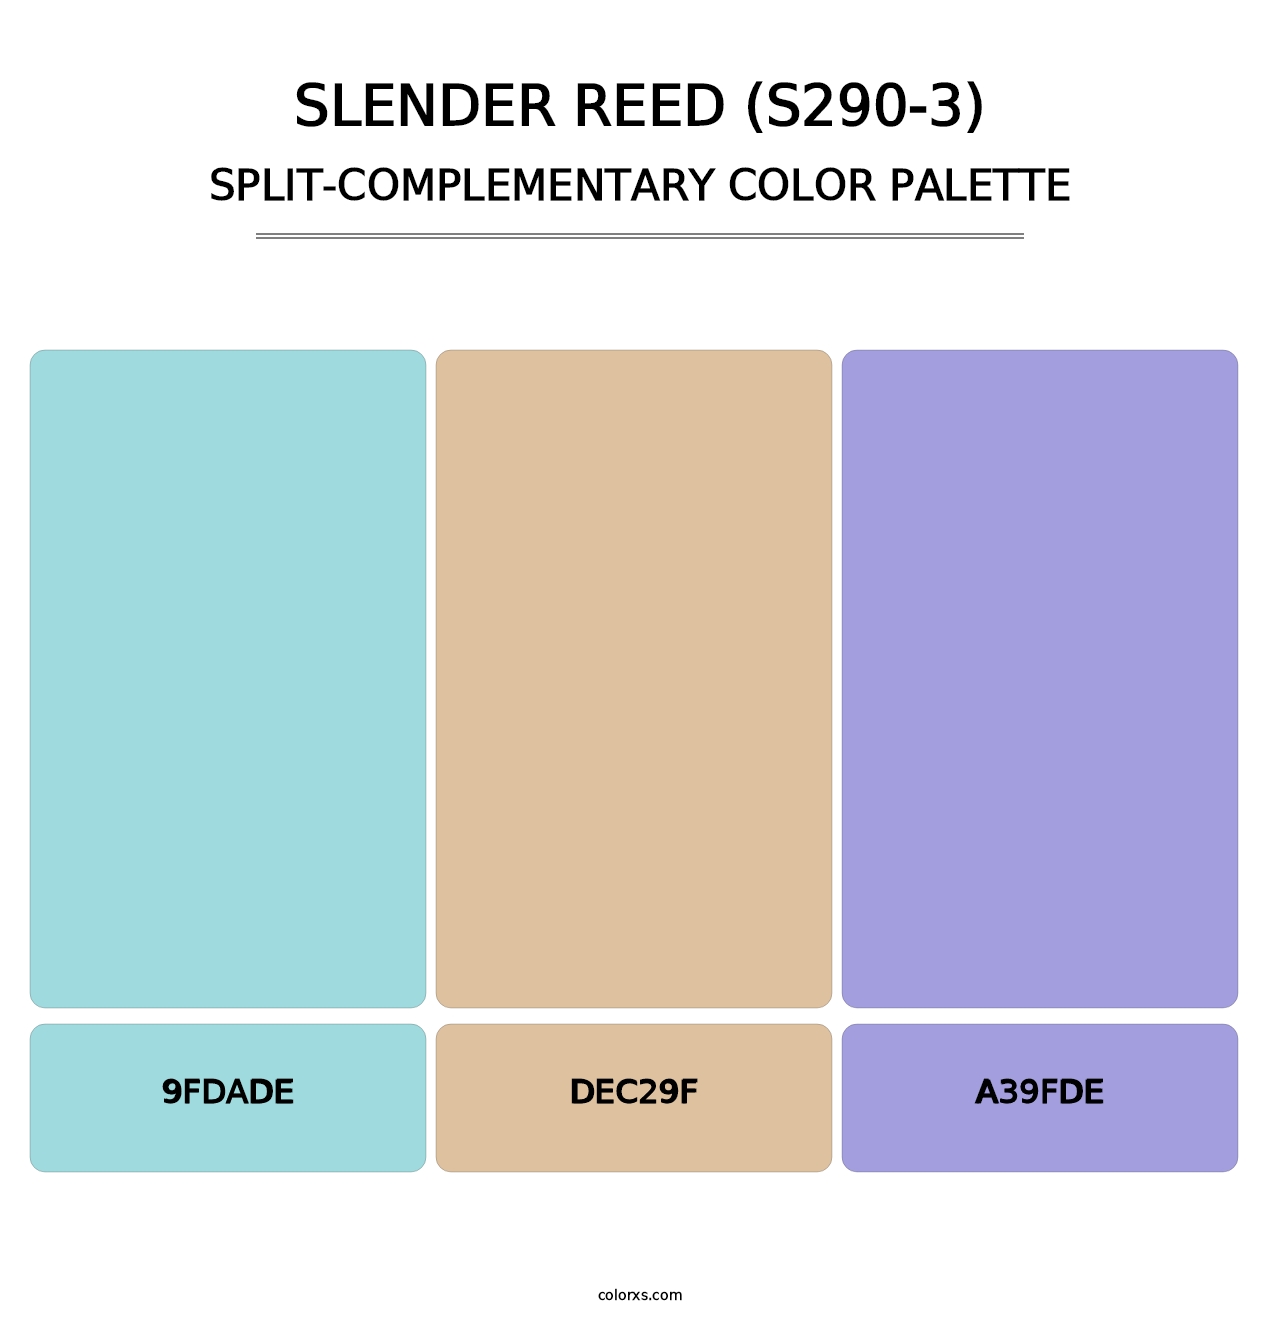 Slender Reed (S290-3) - Split-Complementary Color Palette